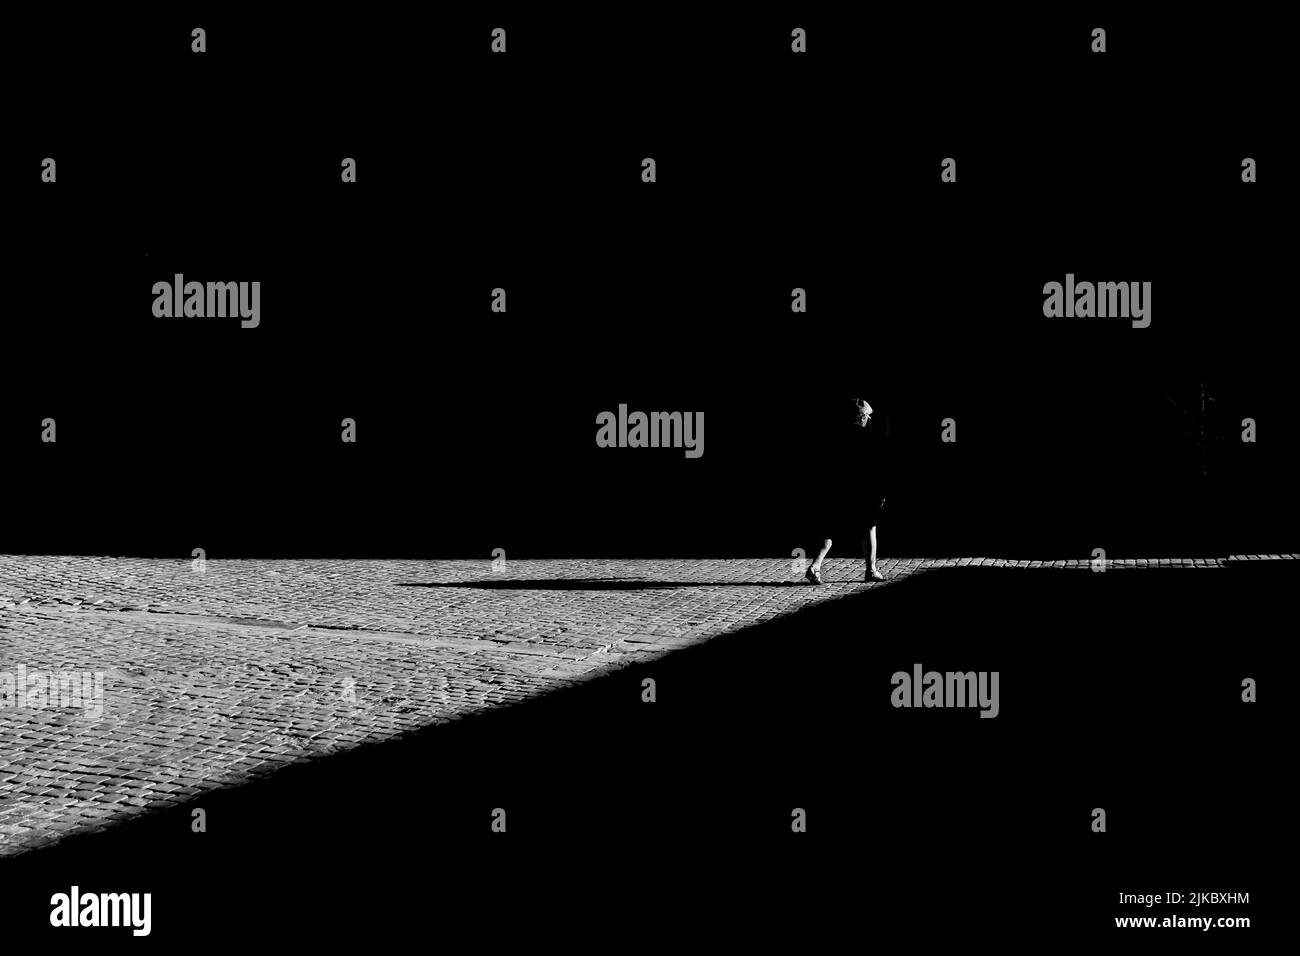 Échelle de gris d'une silhouette de femme marchant dans la rue avec une ombre sur les dalles Banque D'Images